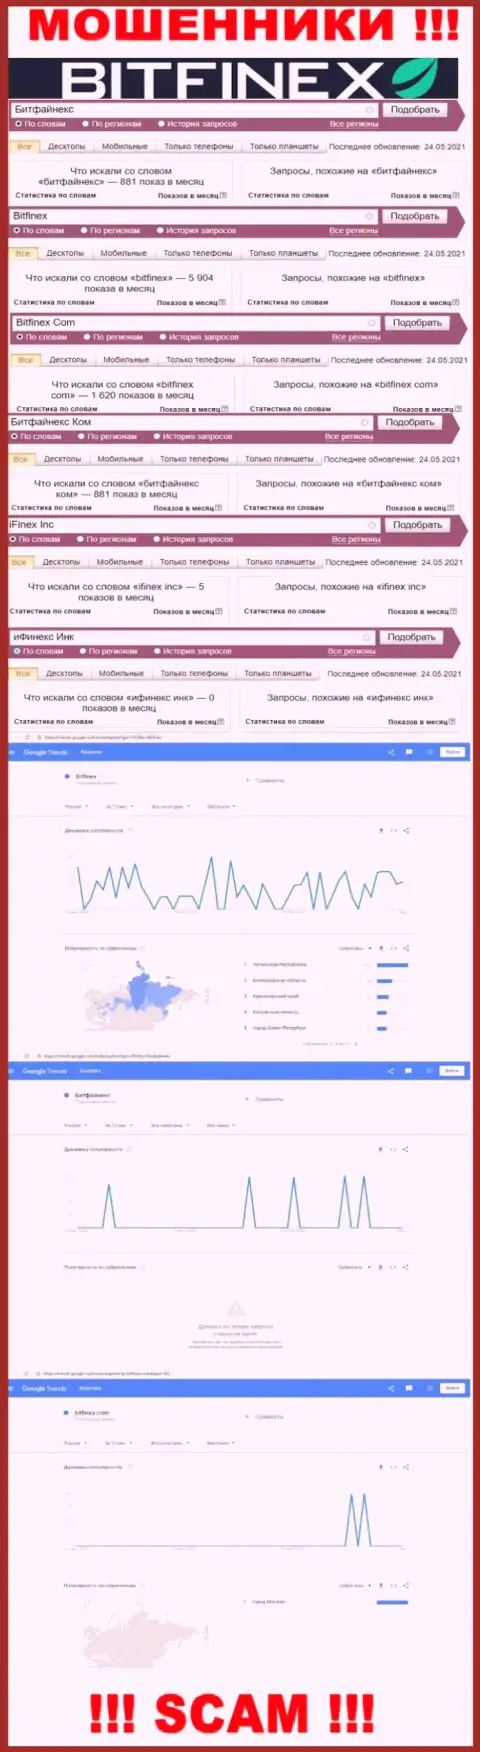 Количество поисковых запросов в поисковиках всемирной сети по бренду жуликов Bitfinex